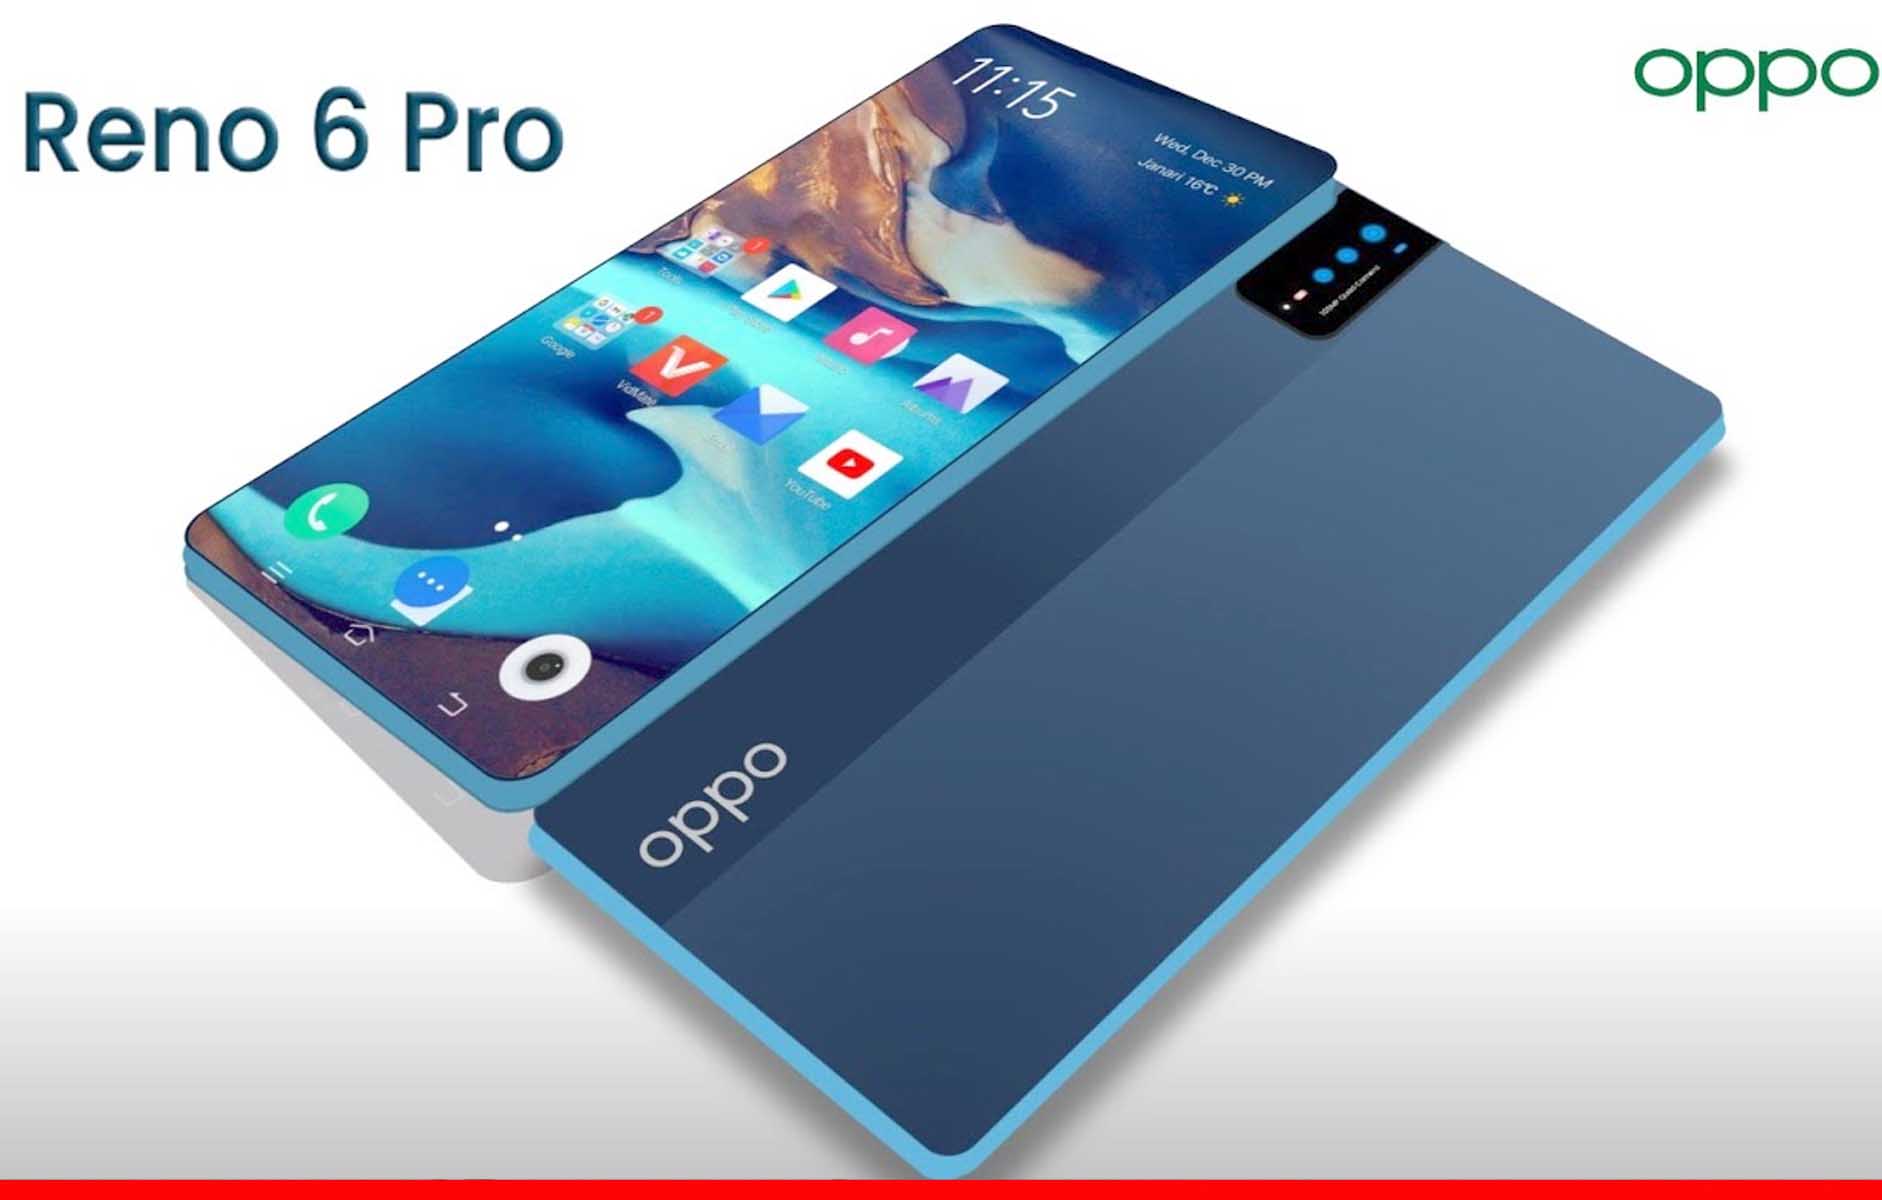 भारत में कल लॉन्च होने जा रहे Oppo Reno 6 Pro 5G स्मार्टफोन